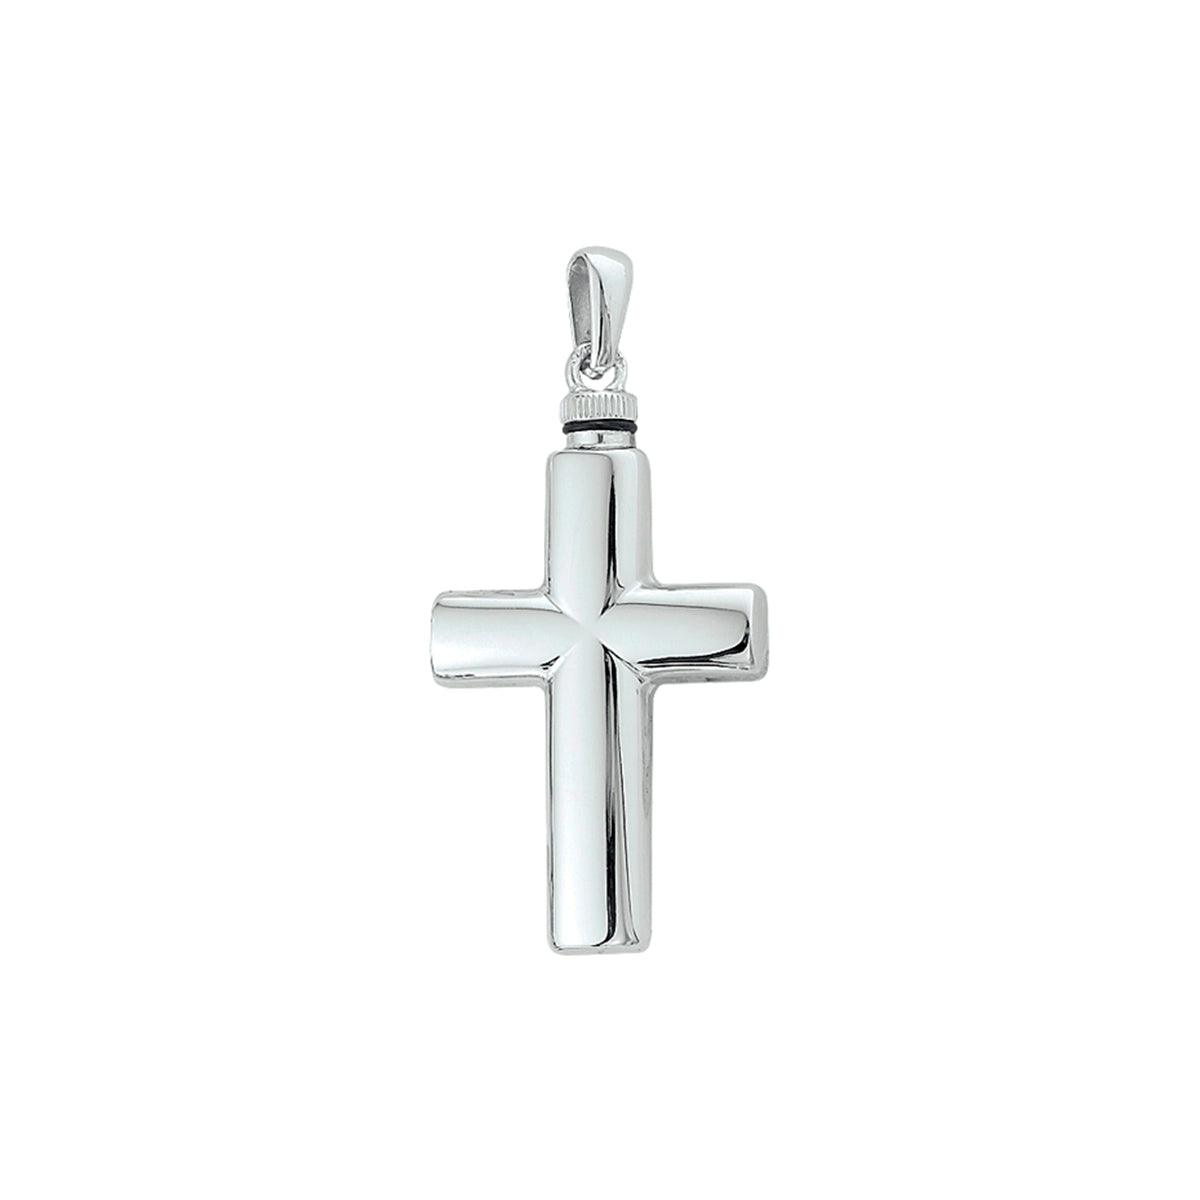  Zilveren ashanger kruis, gedenksieraad is geschikt om as en ook haar in te verwerken